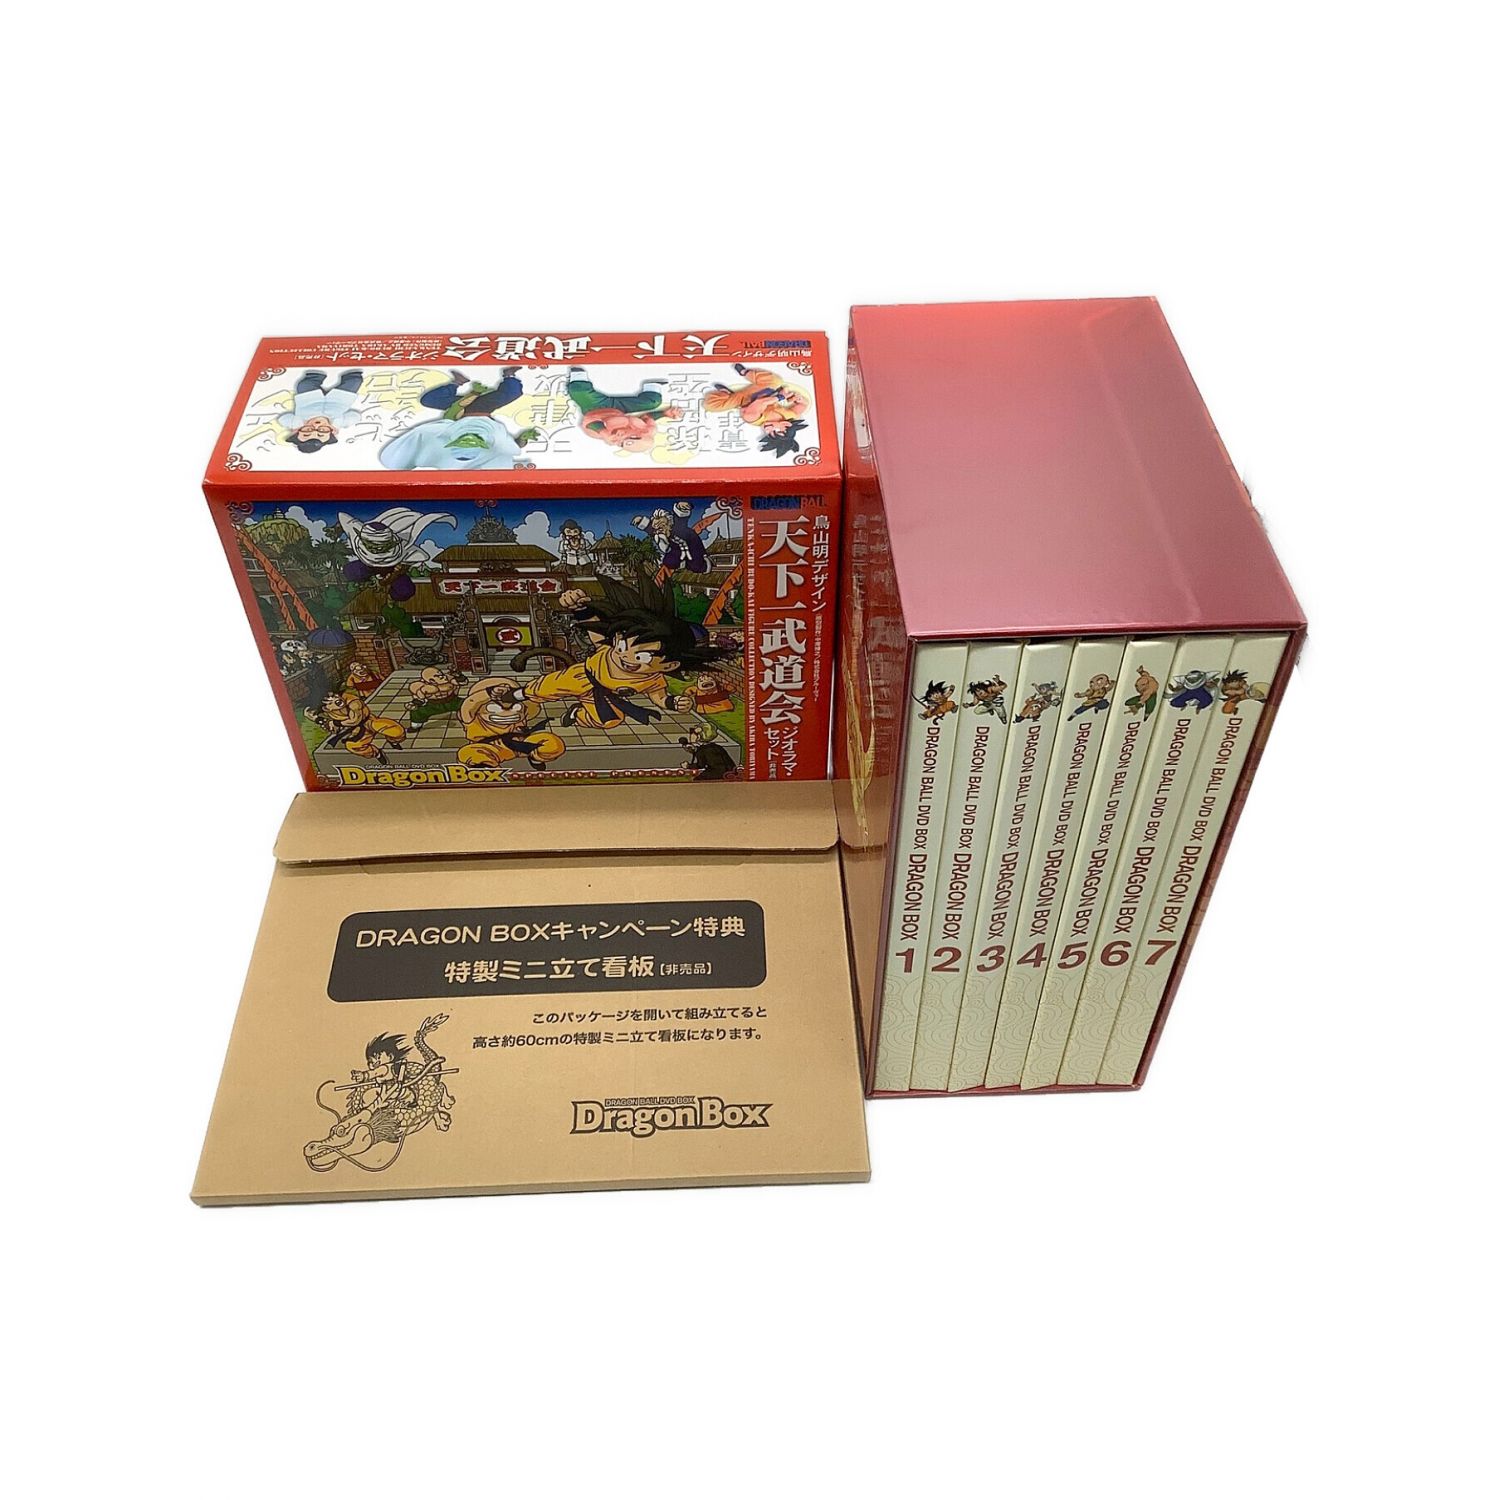 DRAGON BALL DVD BOX 初回出荷限定完全予約限定生産・26枚組 付属品